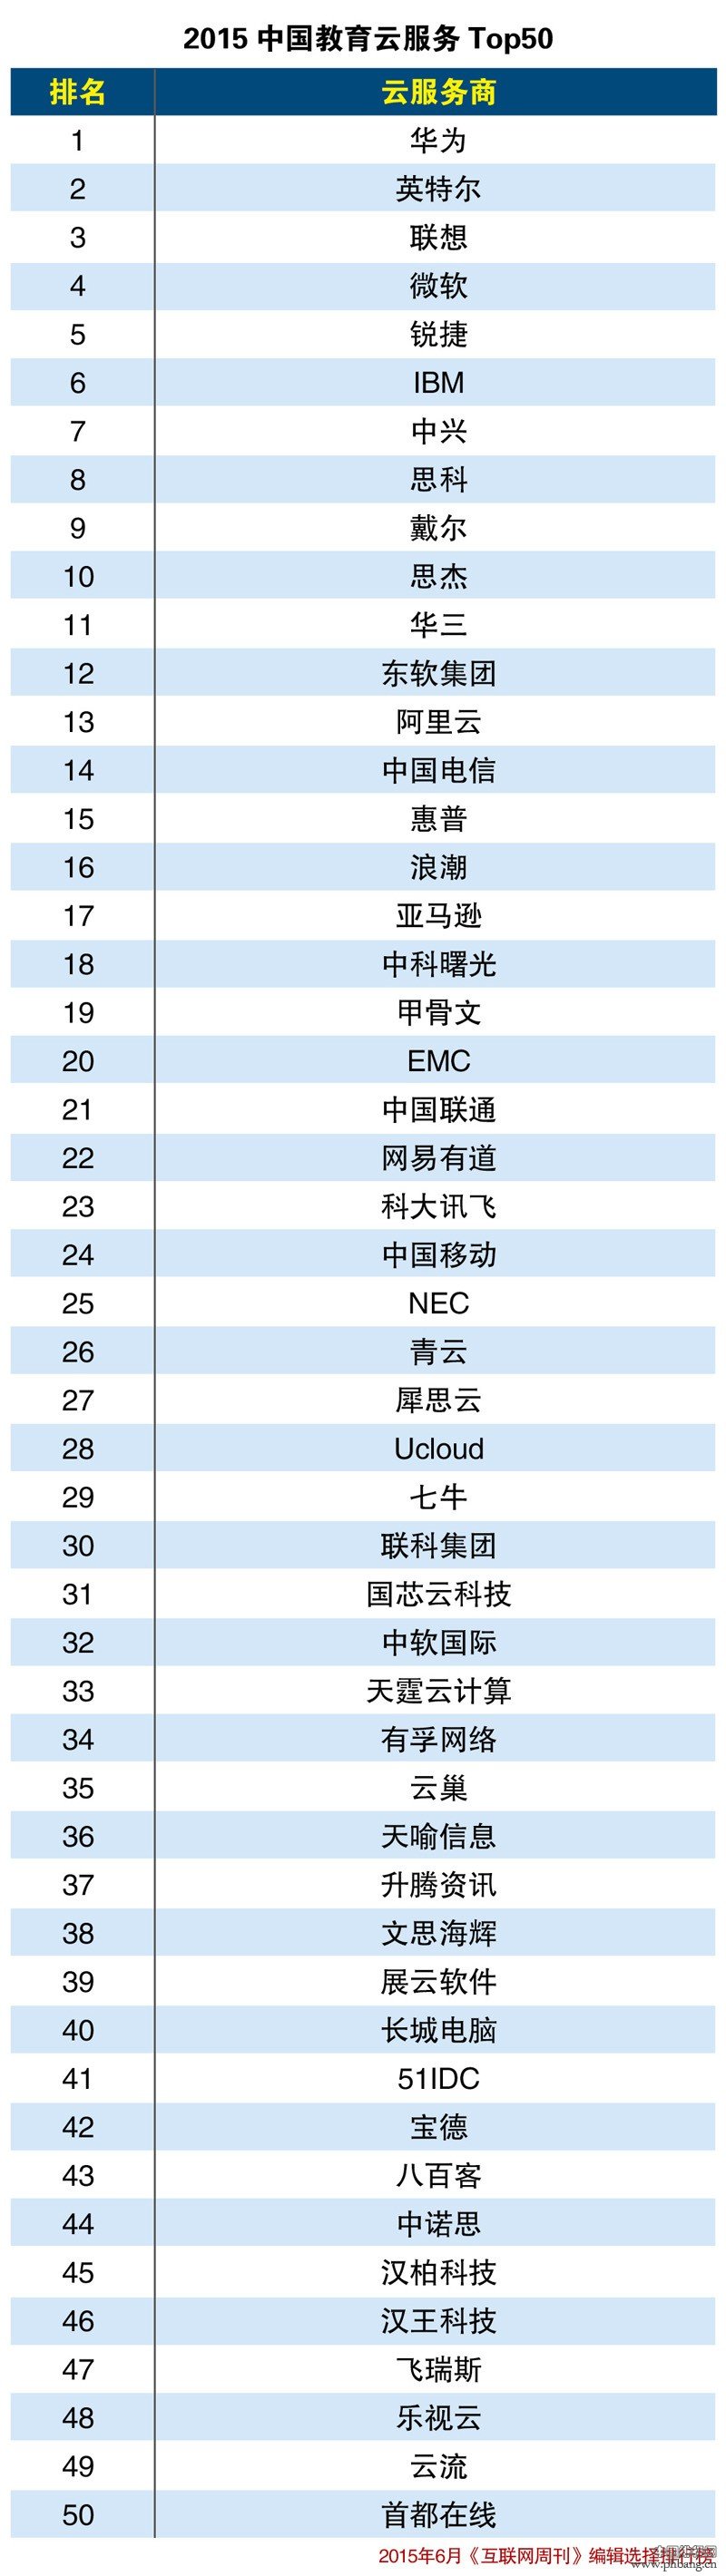 2015年中国教育云服务排行榜Top50